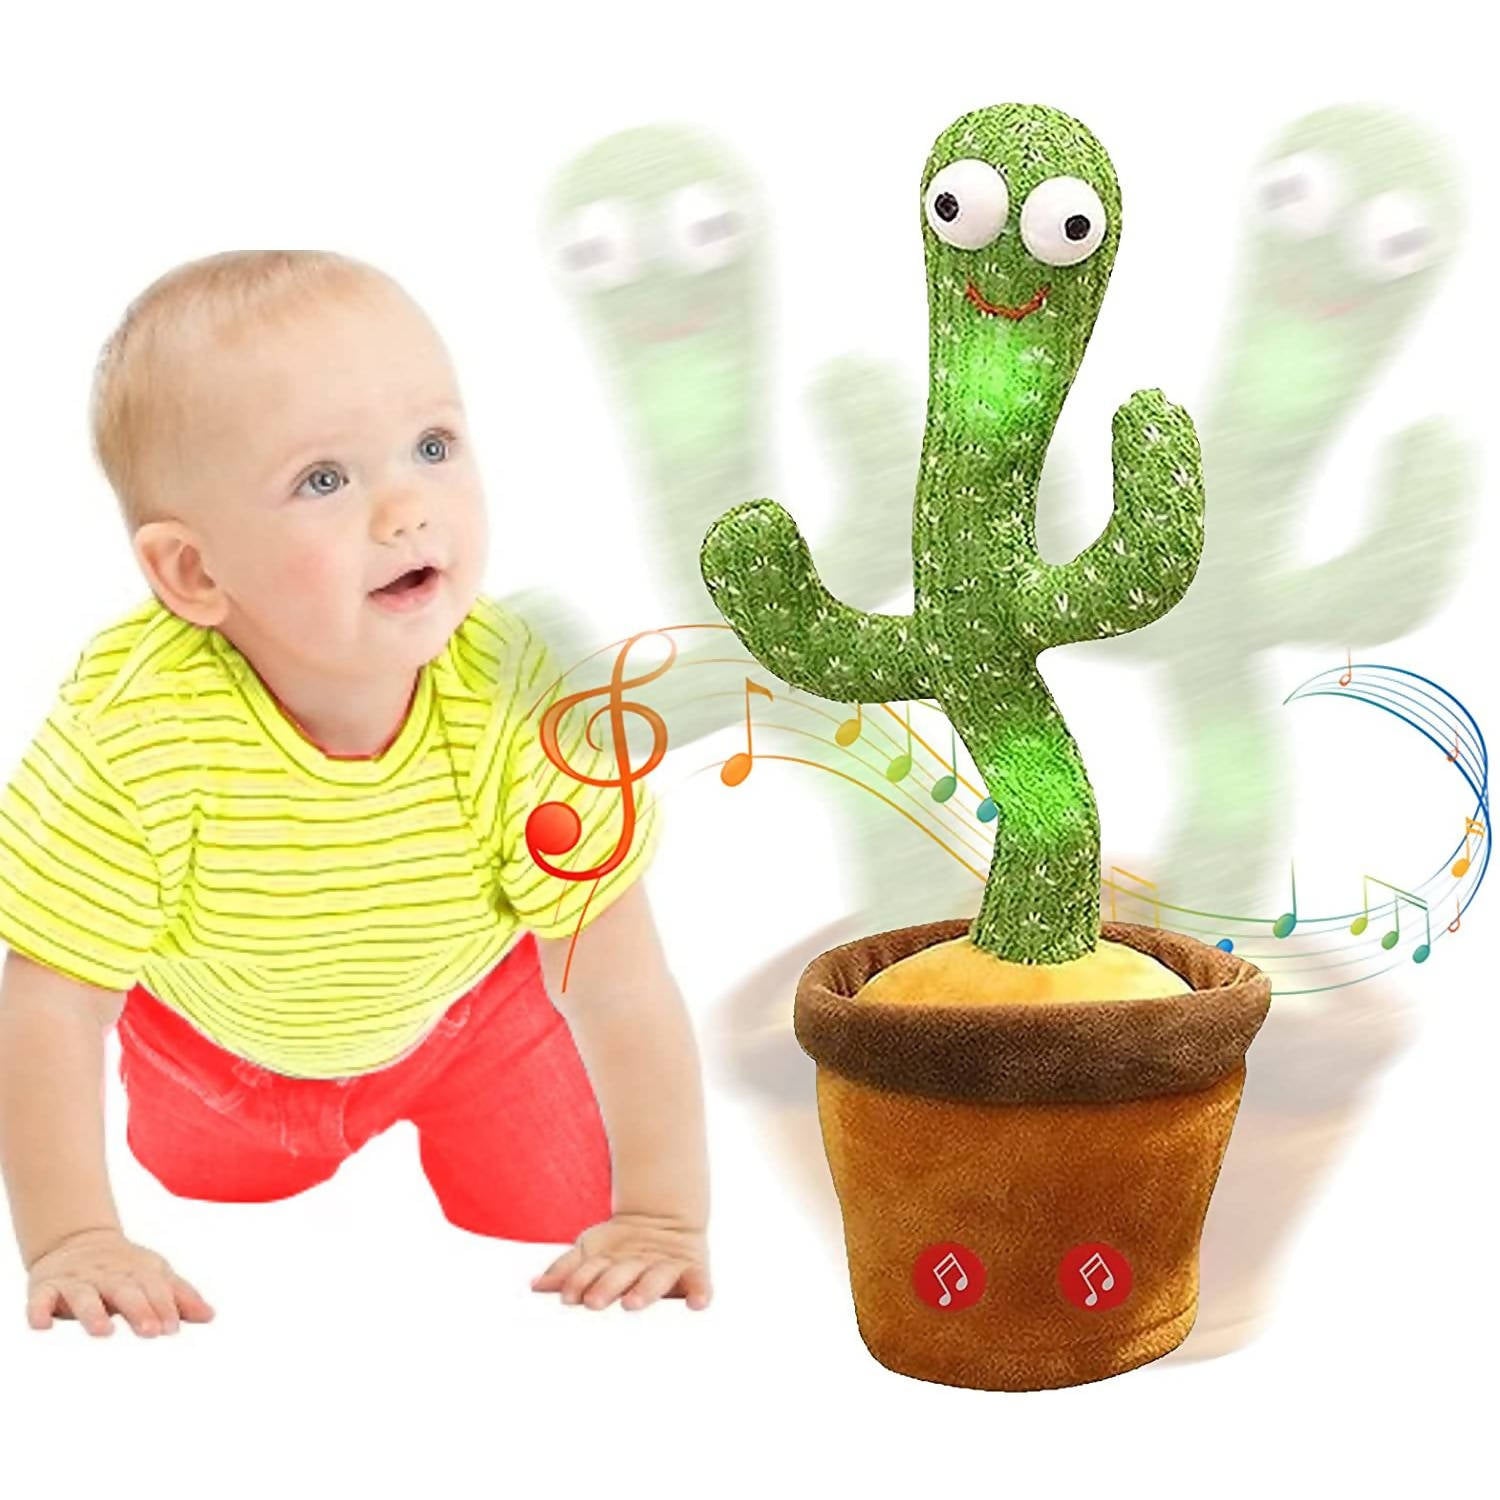 Dancing Cactus Repeat Talking Dancing Cactus Toy